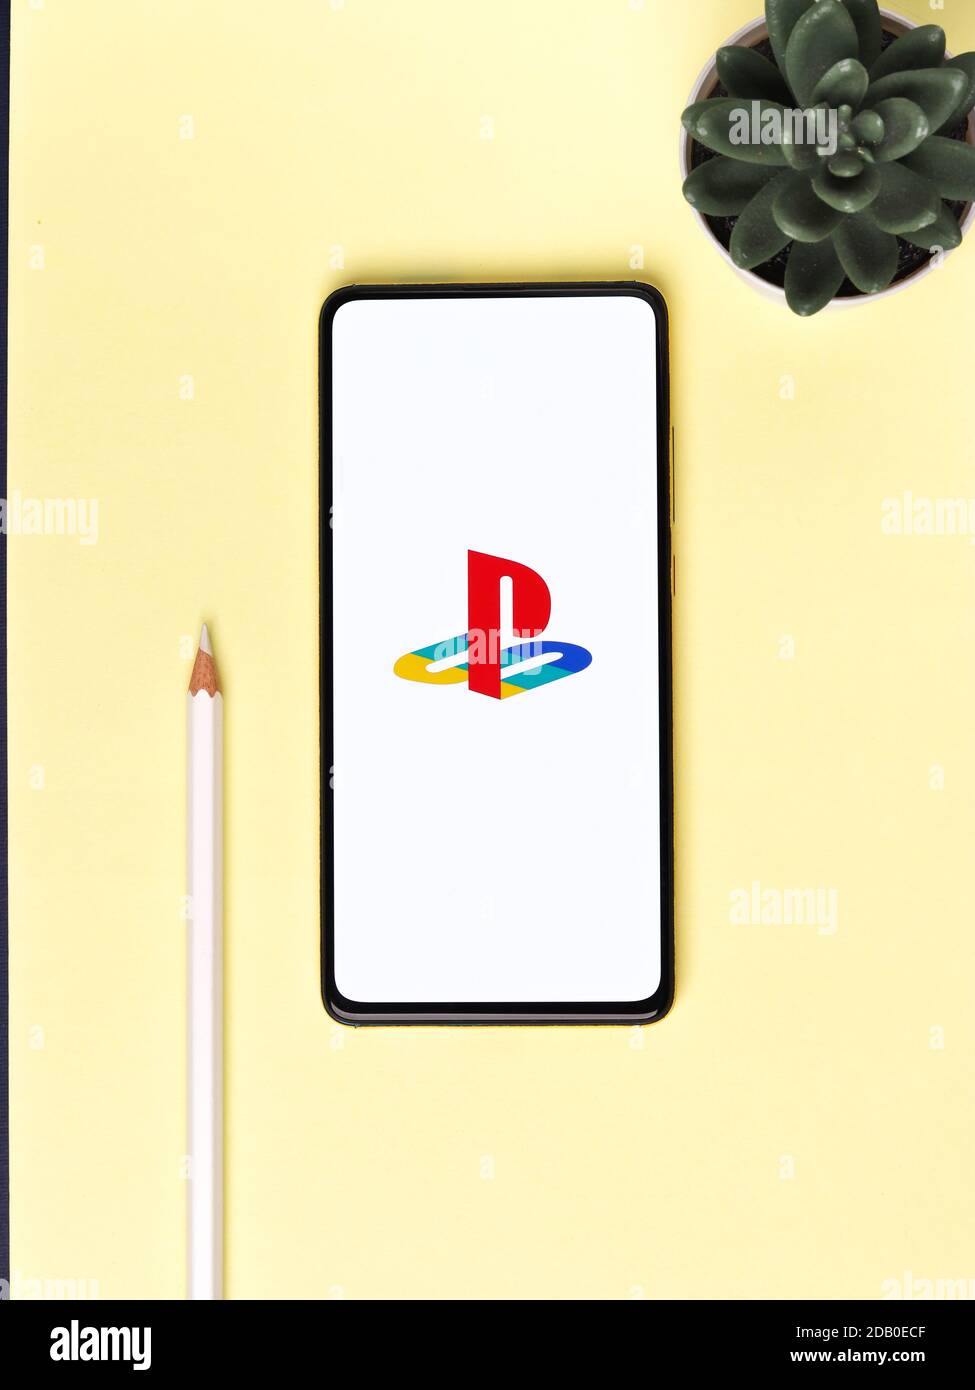 Assam, inde - 15 novembre 2020 : logo Play station 5 sur image de stock d'écran de téléphone. Banque D'Images